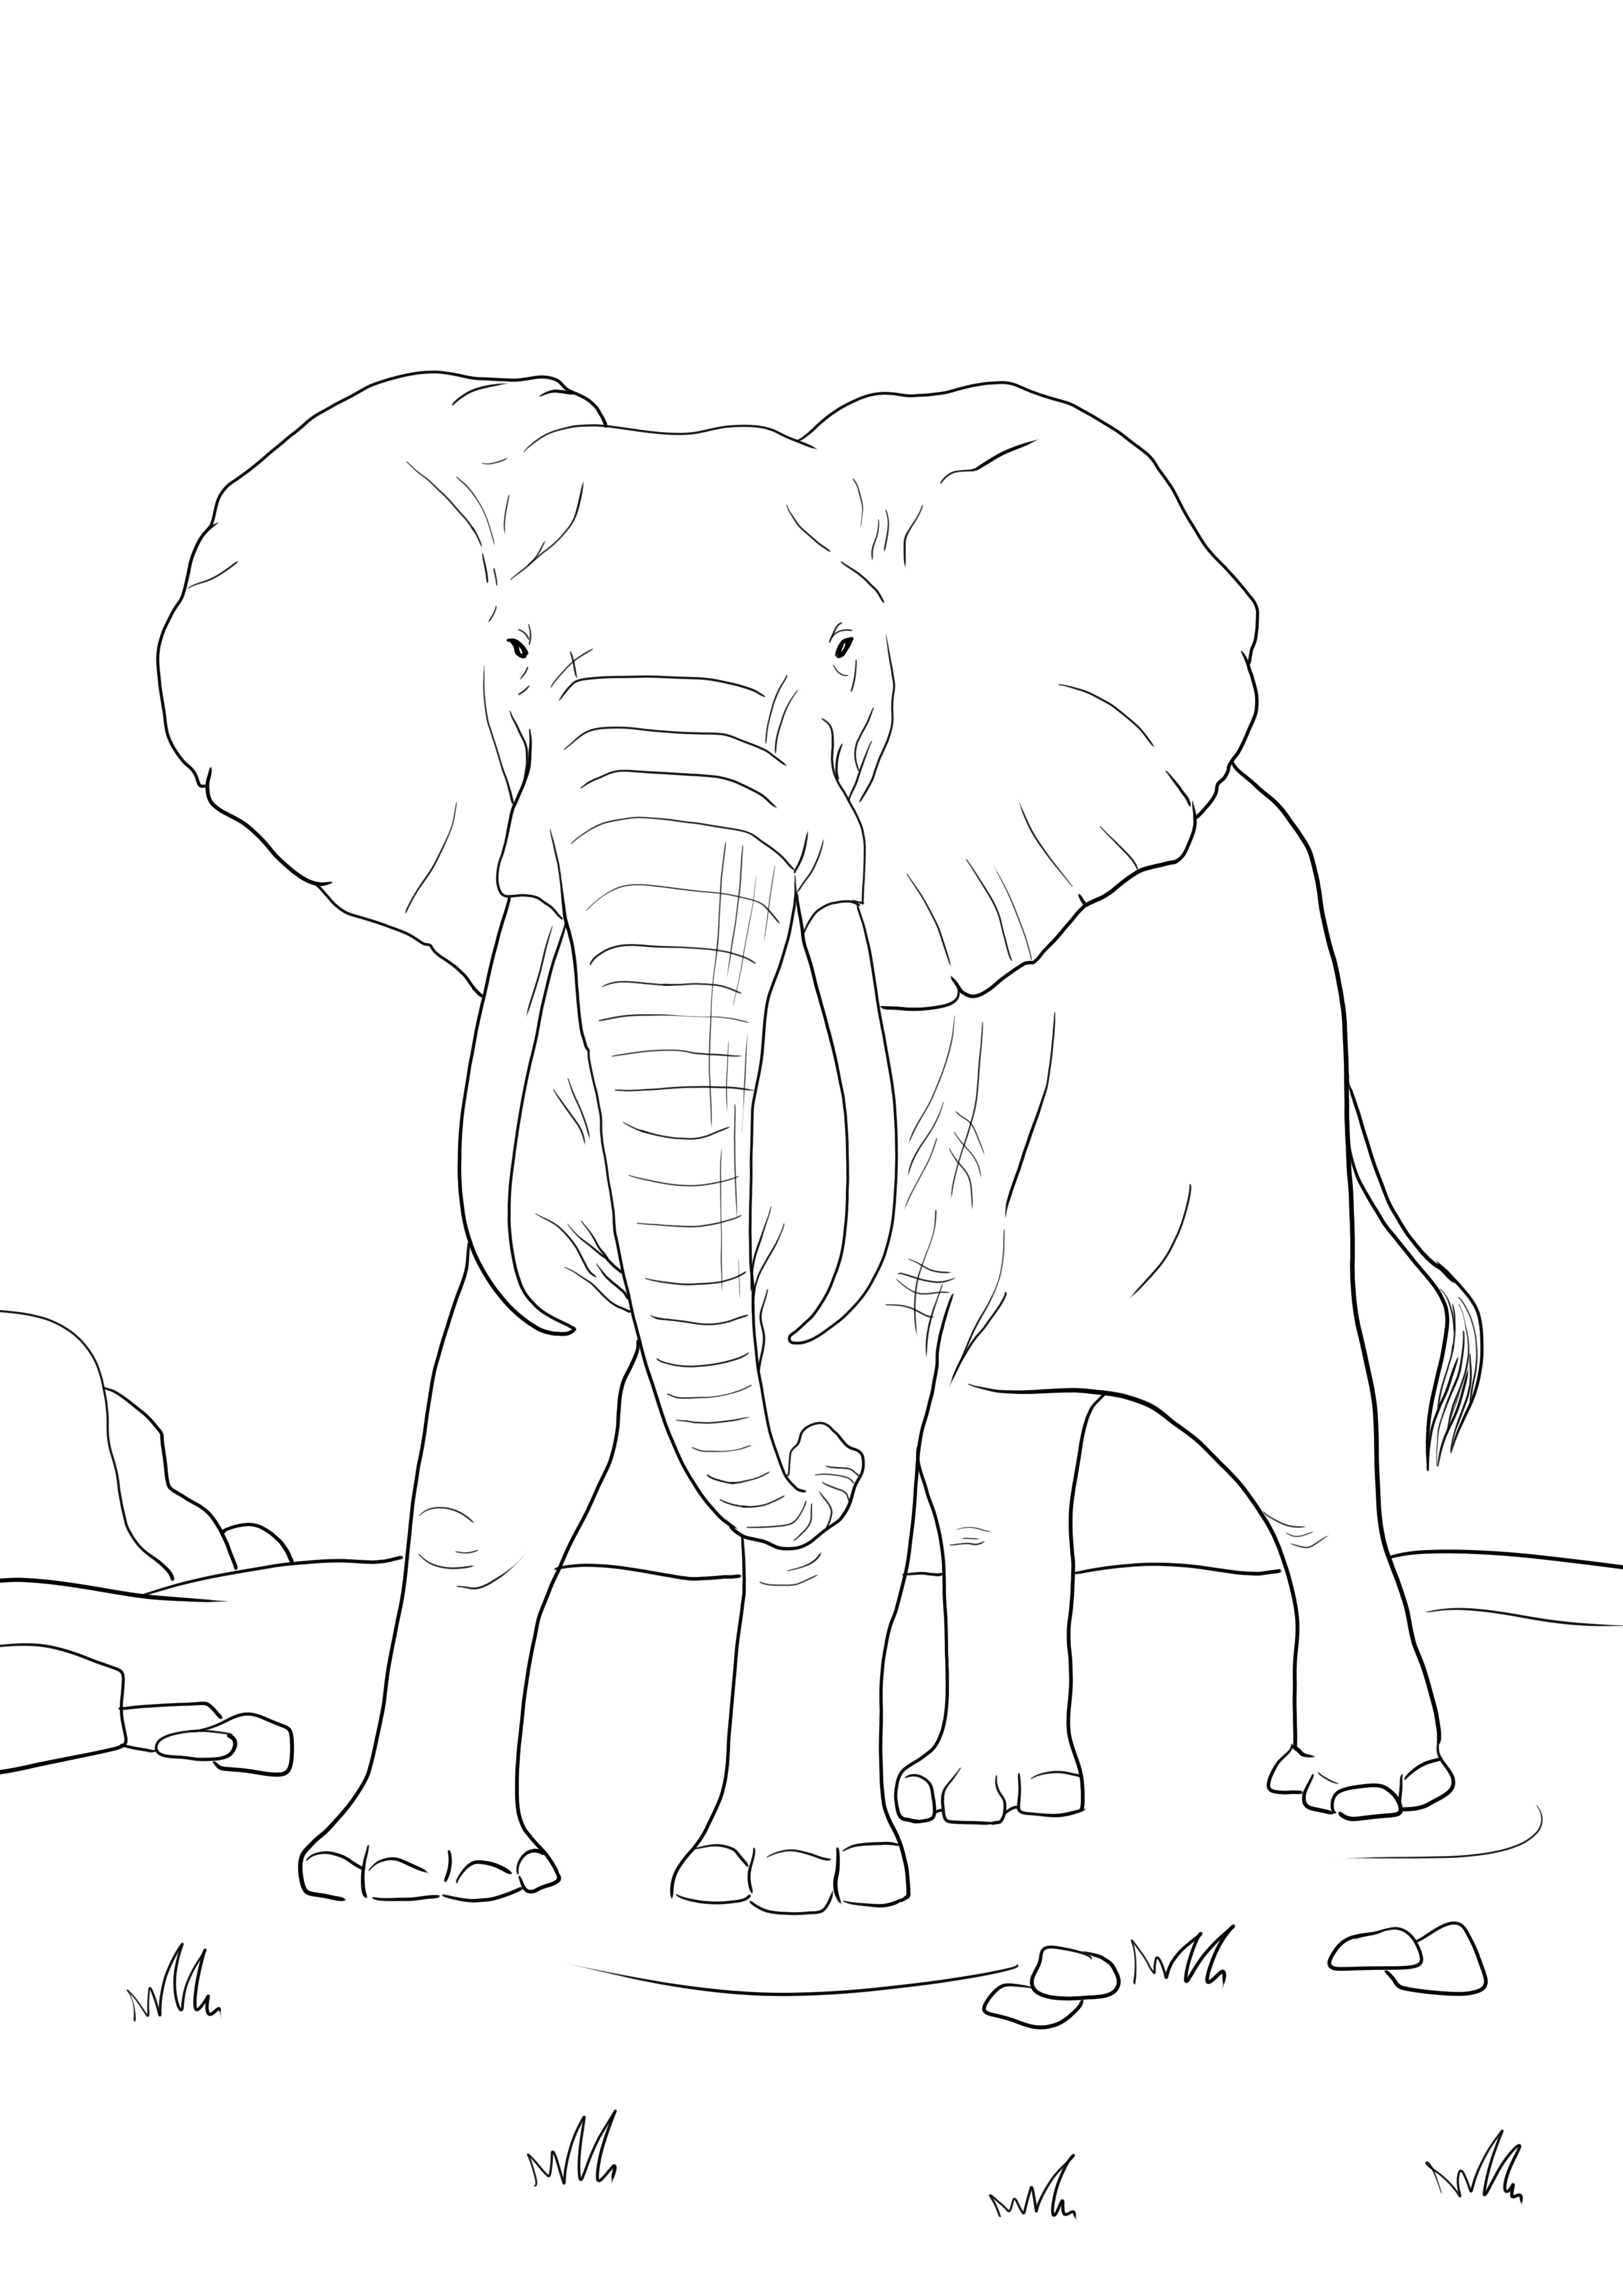 Una página para colorear simple de un elefante africano gratis para descargar o imprimir directamente